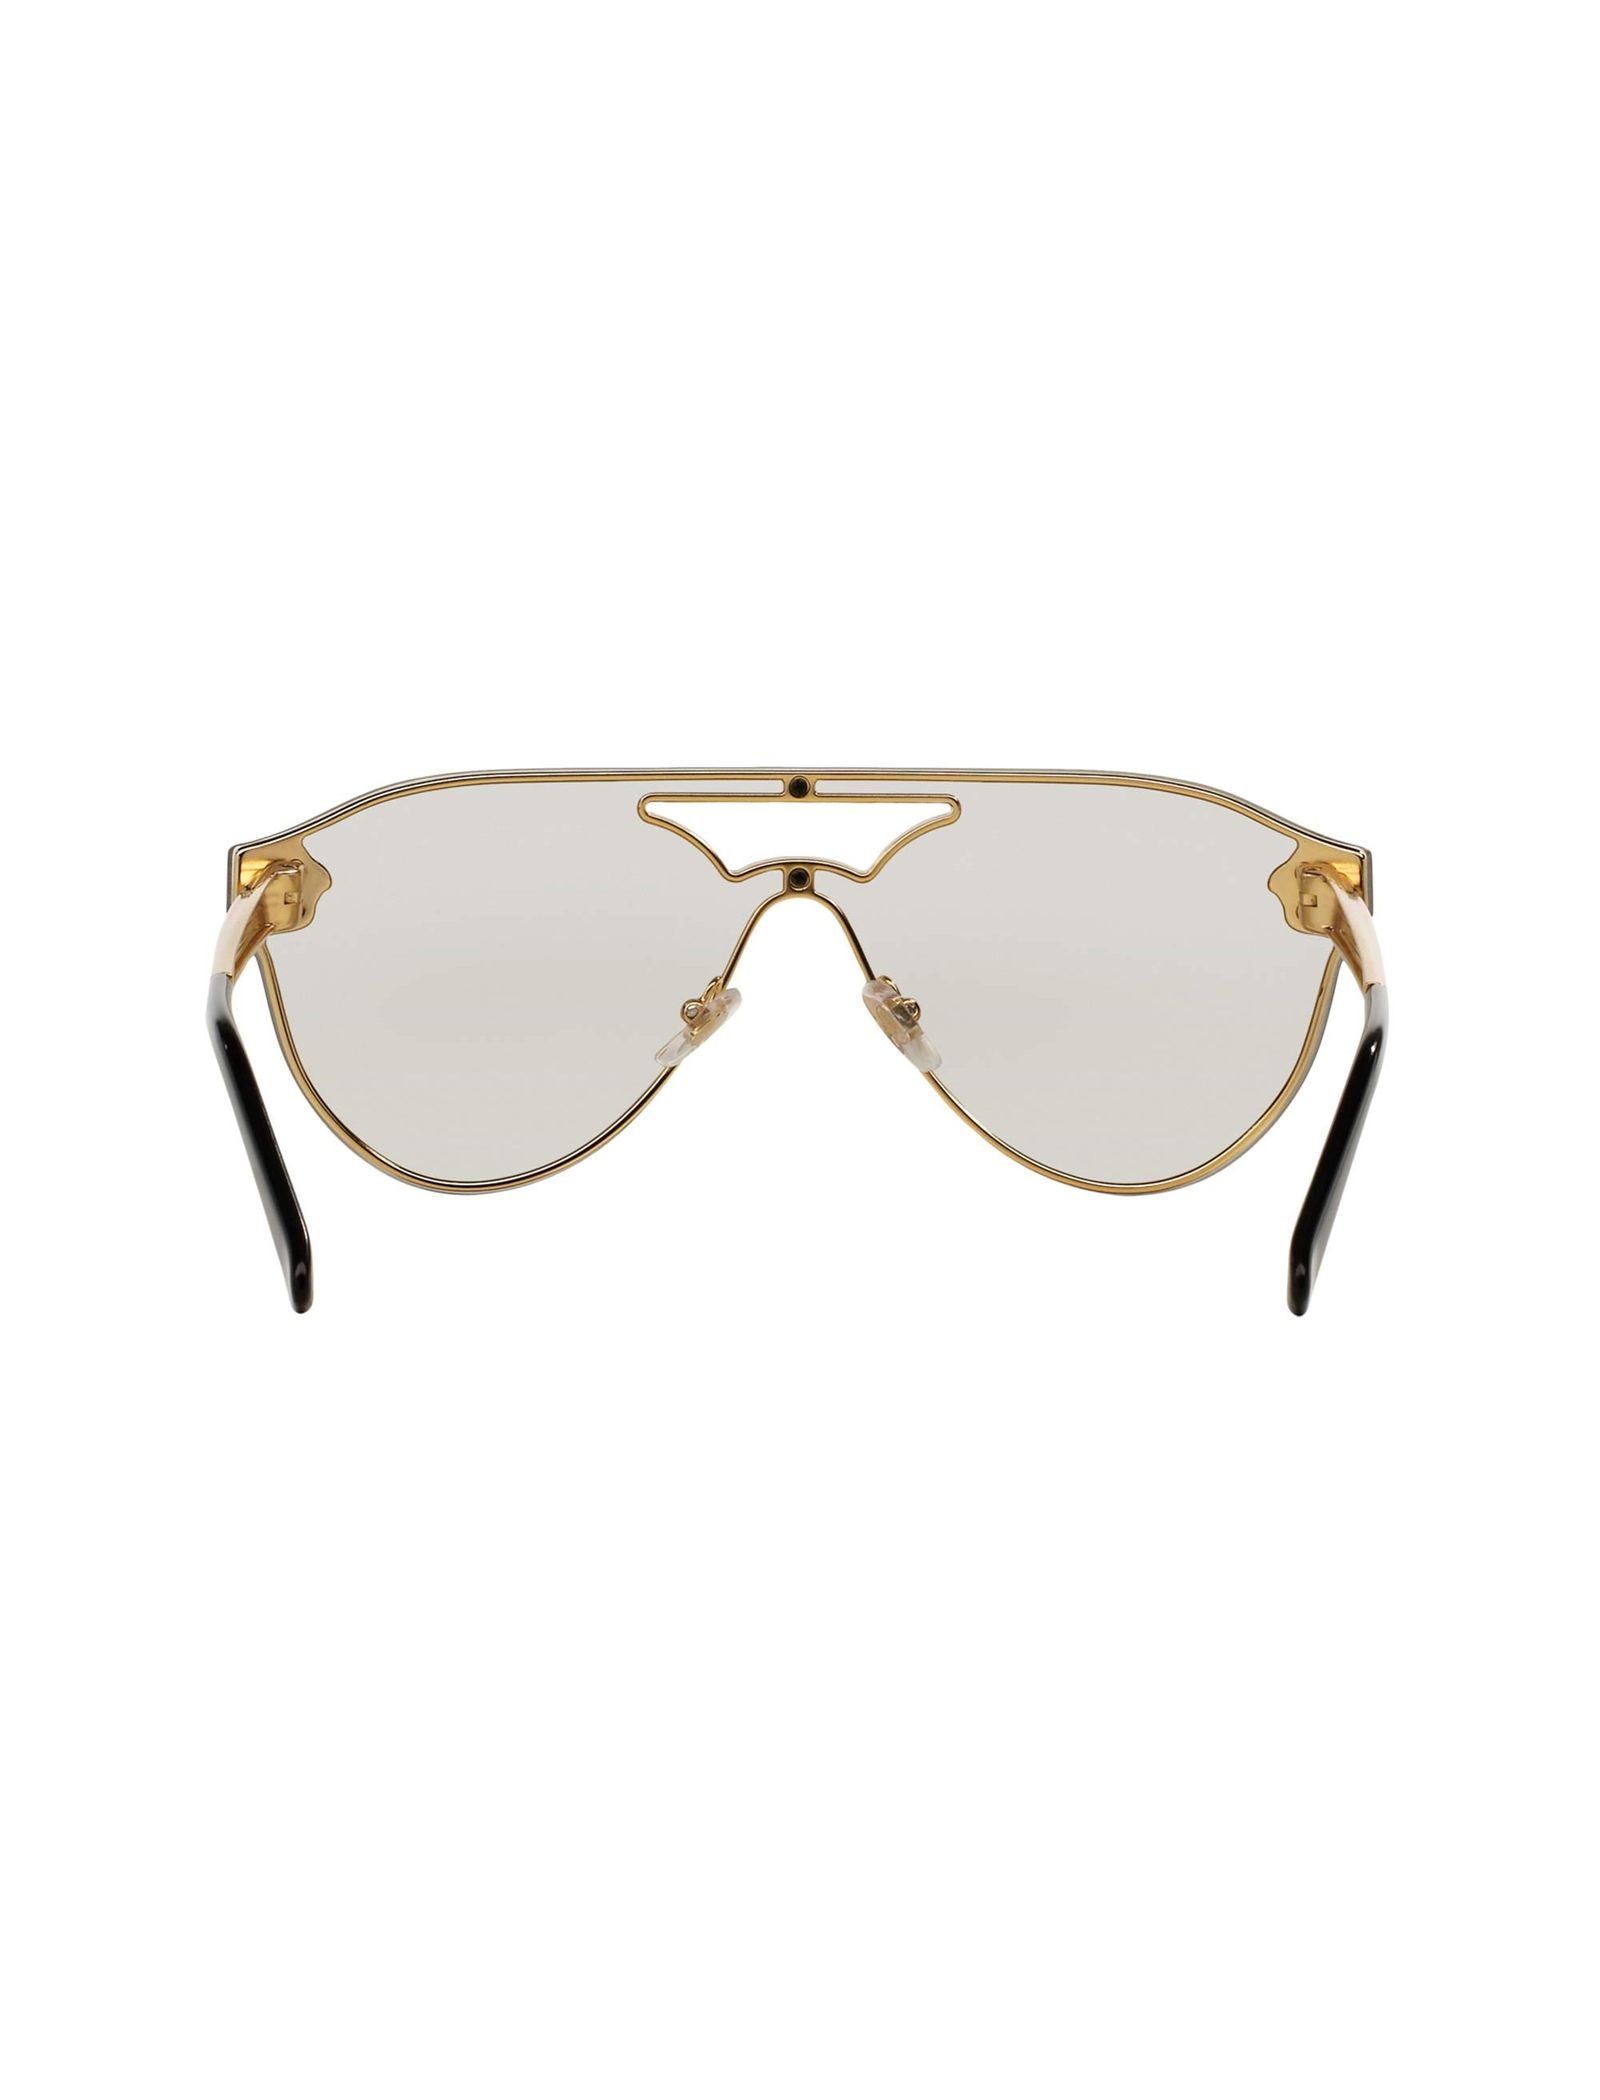 عینک آفتابی خلبانی زنانه - ورساچه - طلايي - 5